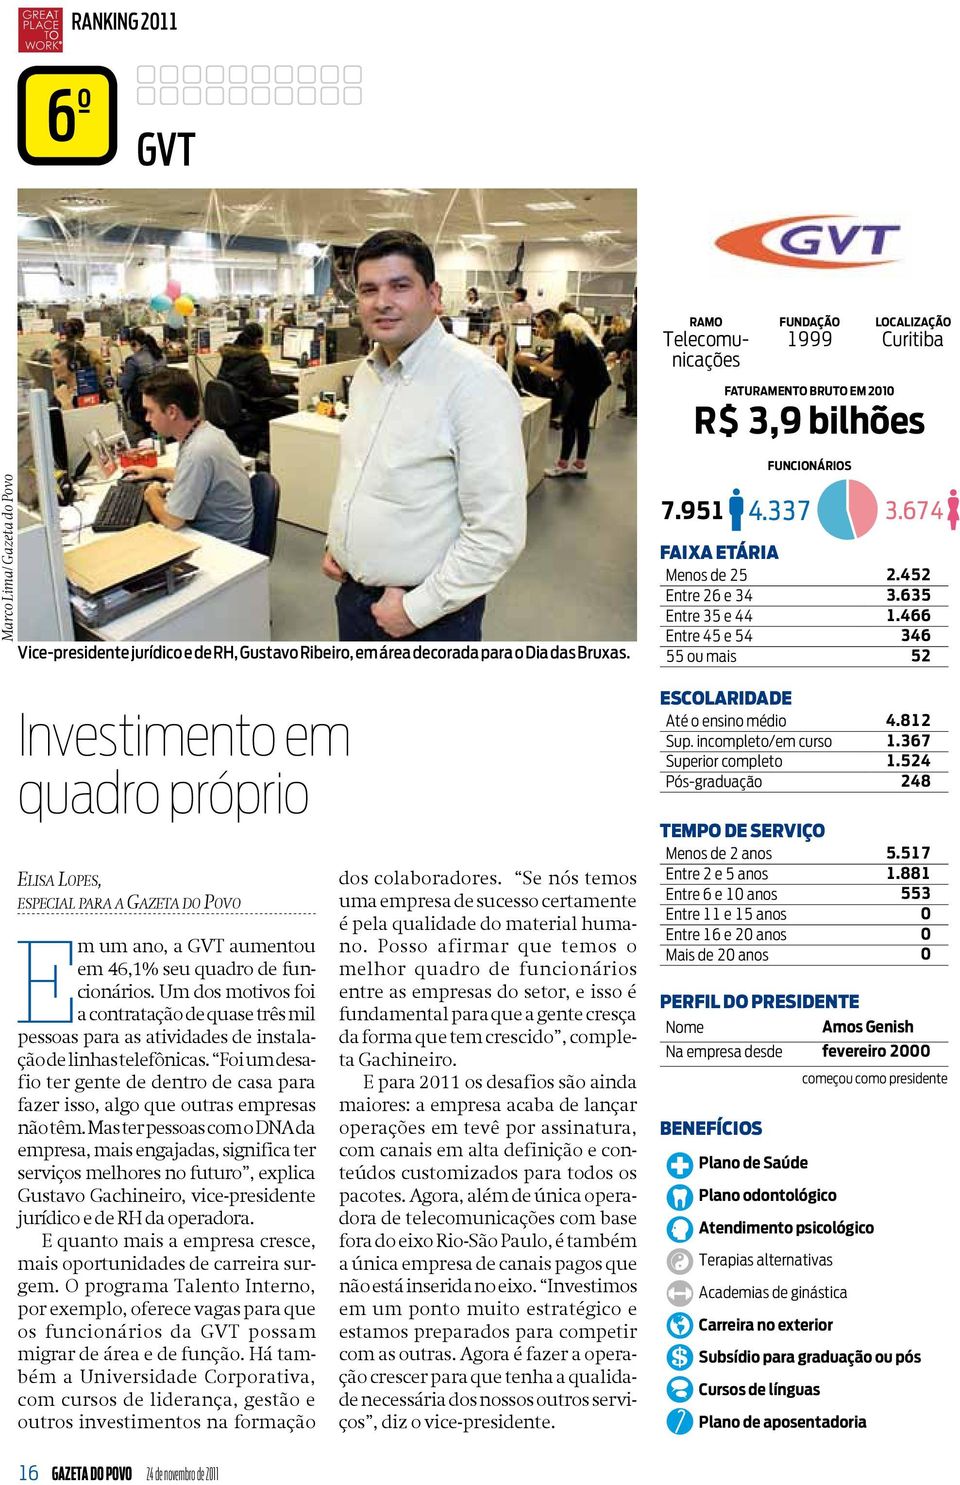 466 Entre 45 e 54 346 55 ou mais 52 Investimento em quadro próprio Elisa Lopes, especial para a Gazeta do Povo Em um ano, a GVT aumentou em 46,1% seu quadro de funcionários.